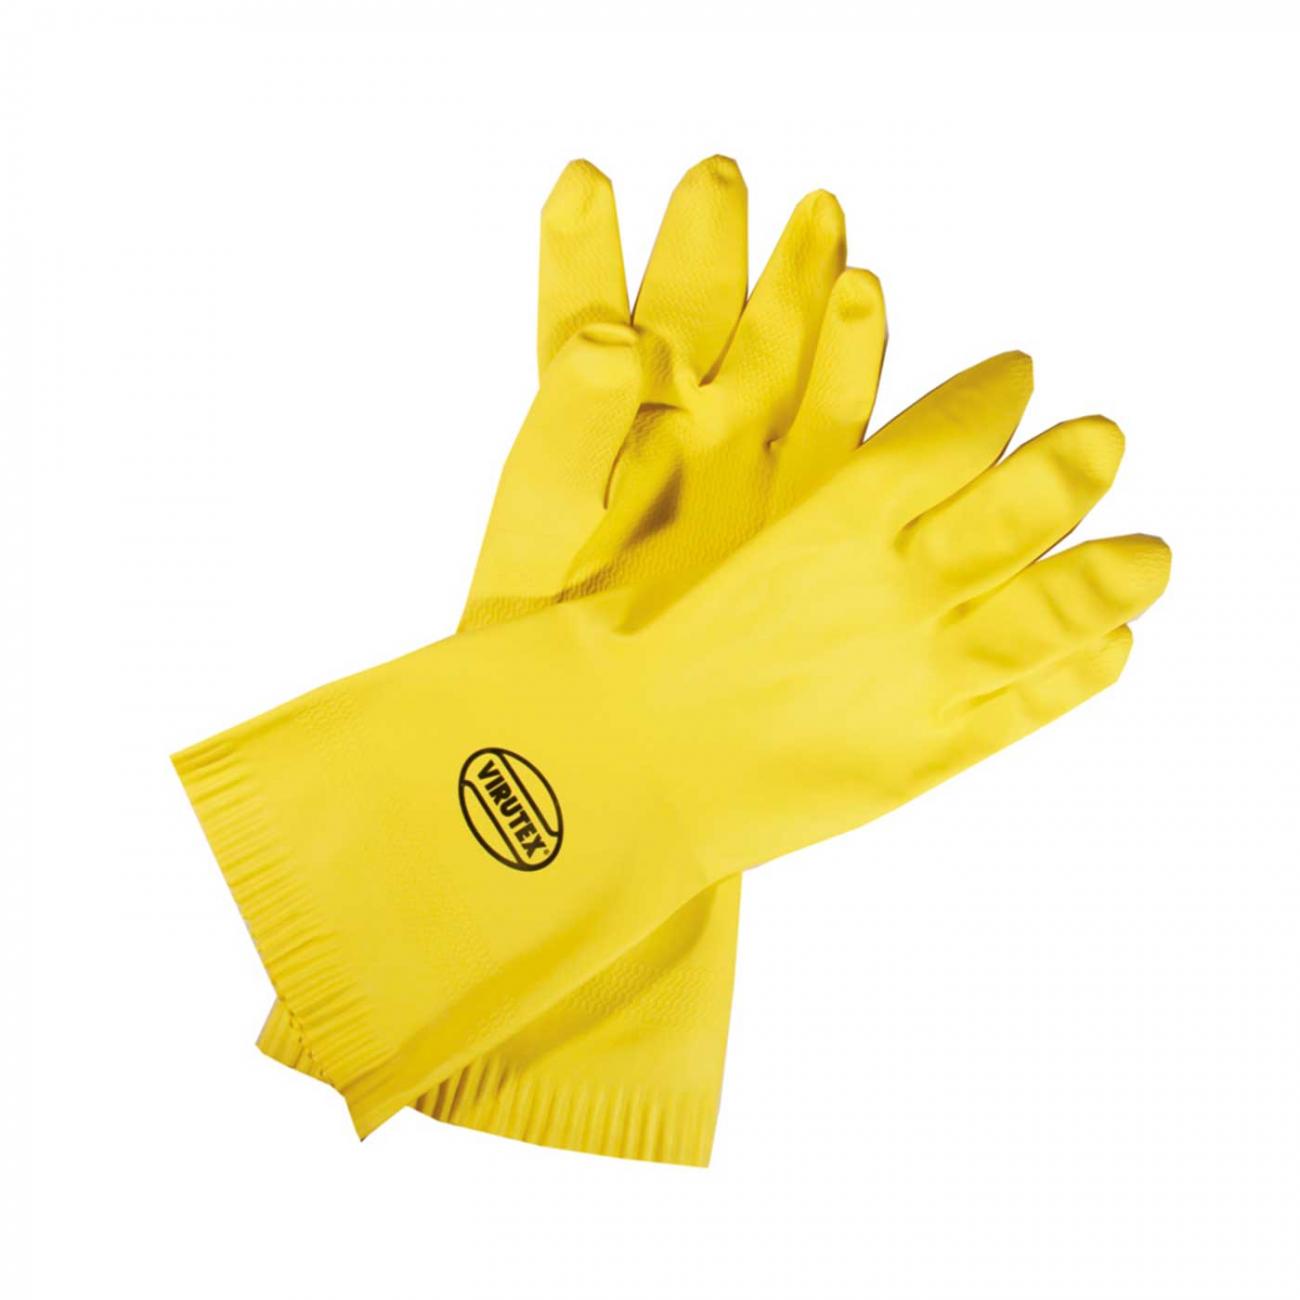 Guantes multiuso standard, amarillo, Super Pro Bettanin - Xtreme Clean